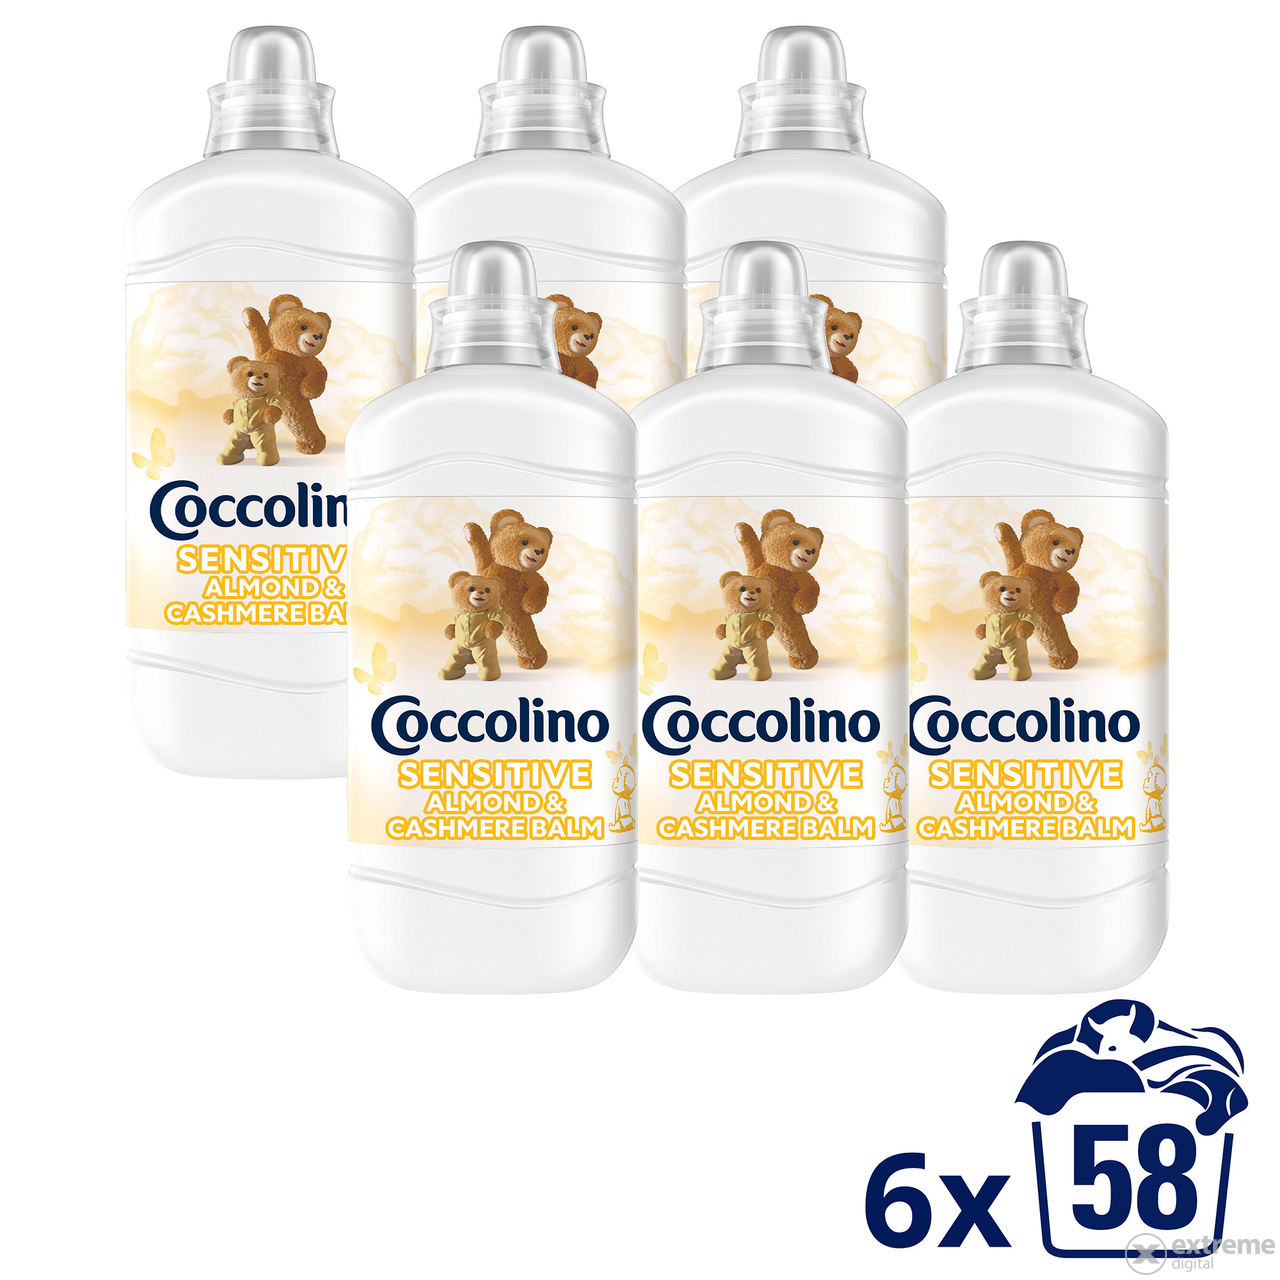 Coccolino Sensitive Almond omekšivač rublja, 6x1450ml